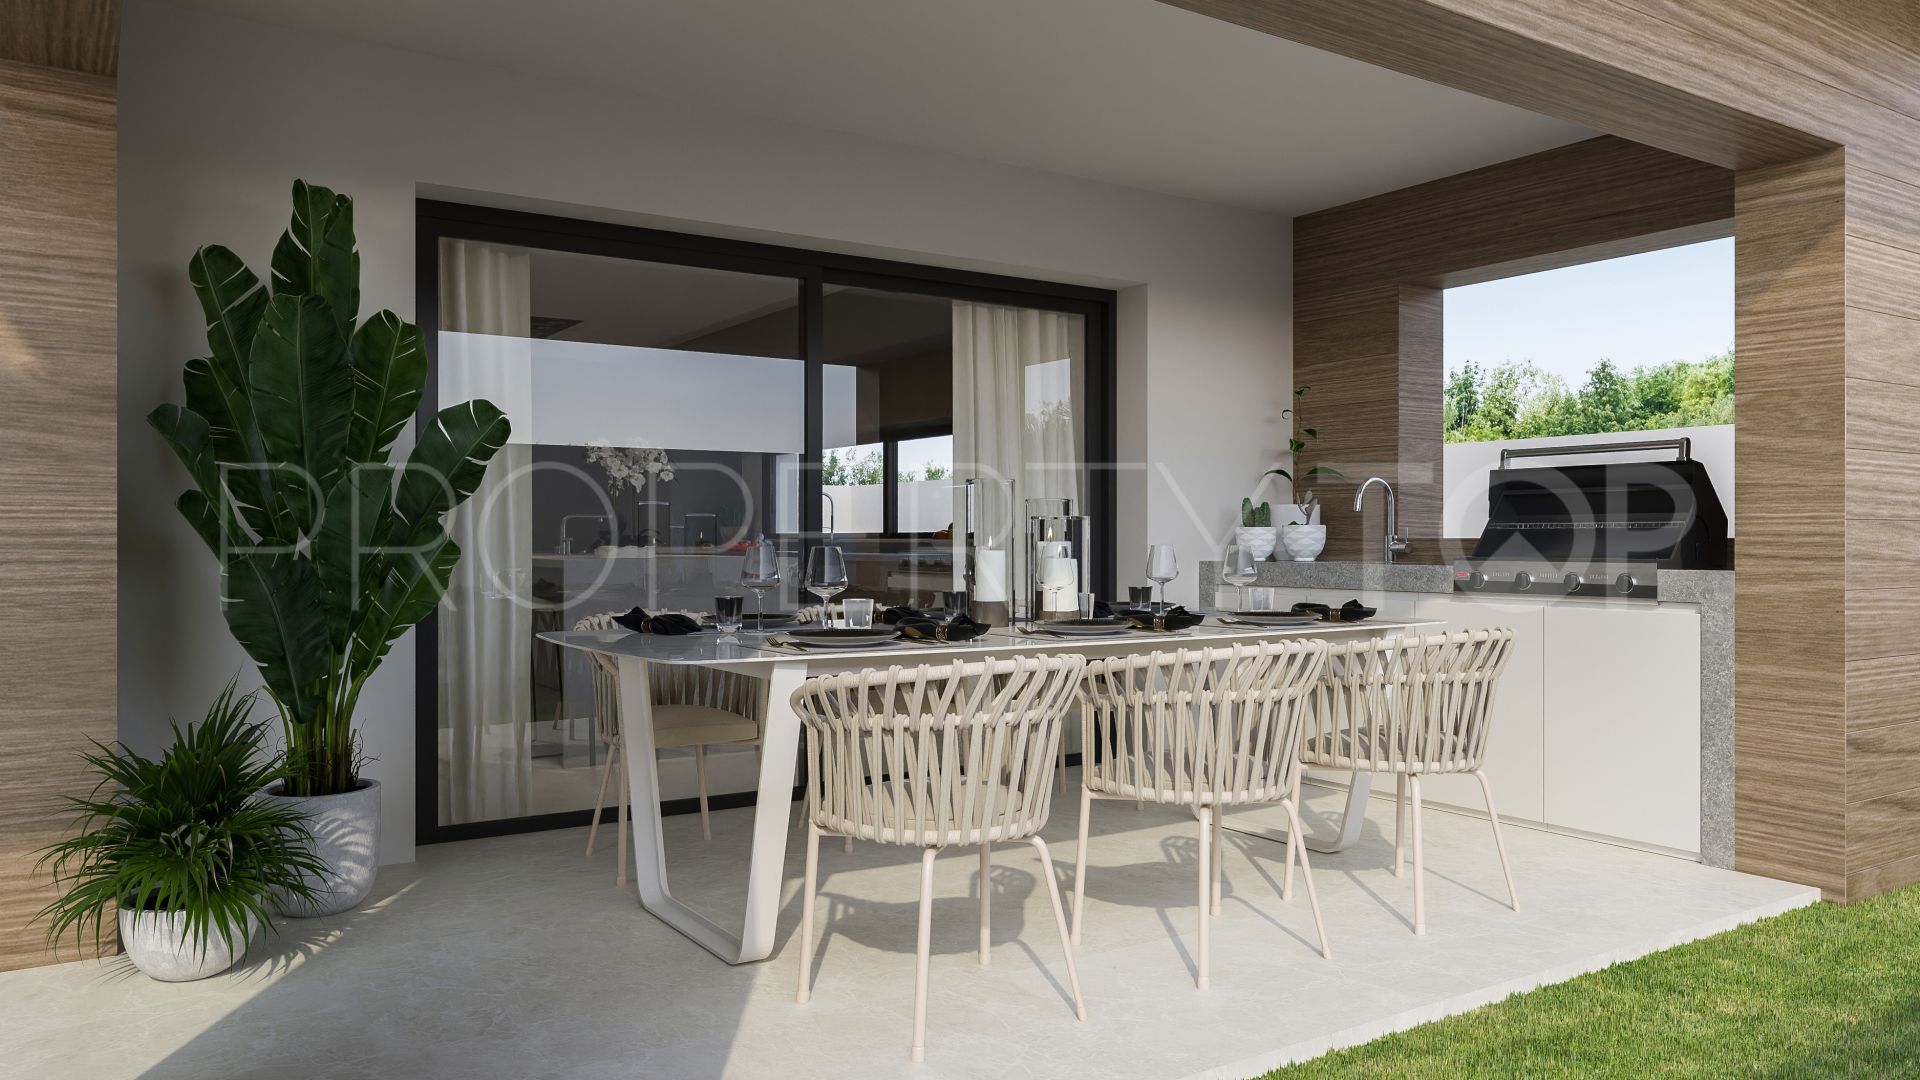 For sale 3 bedrooms villa in Riviera del Sol